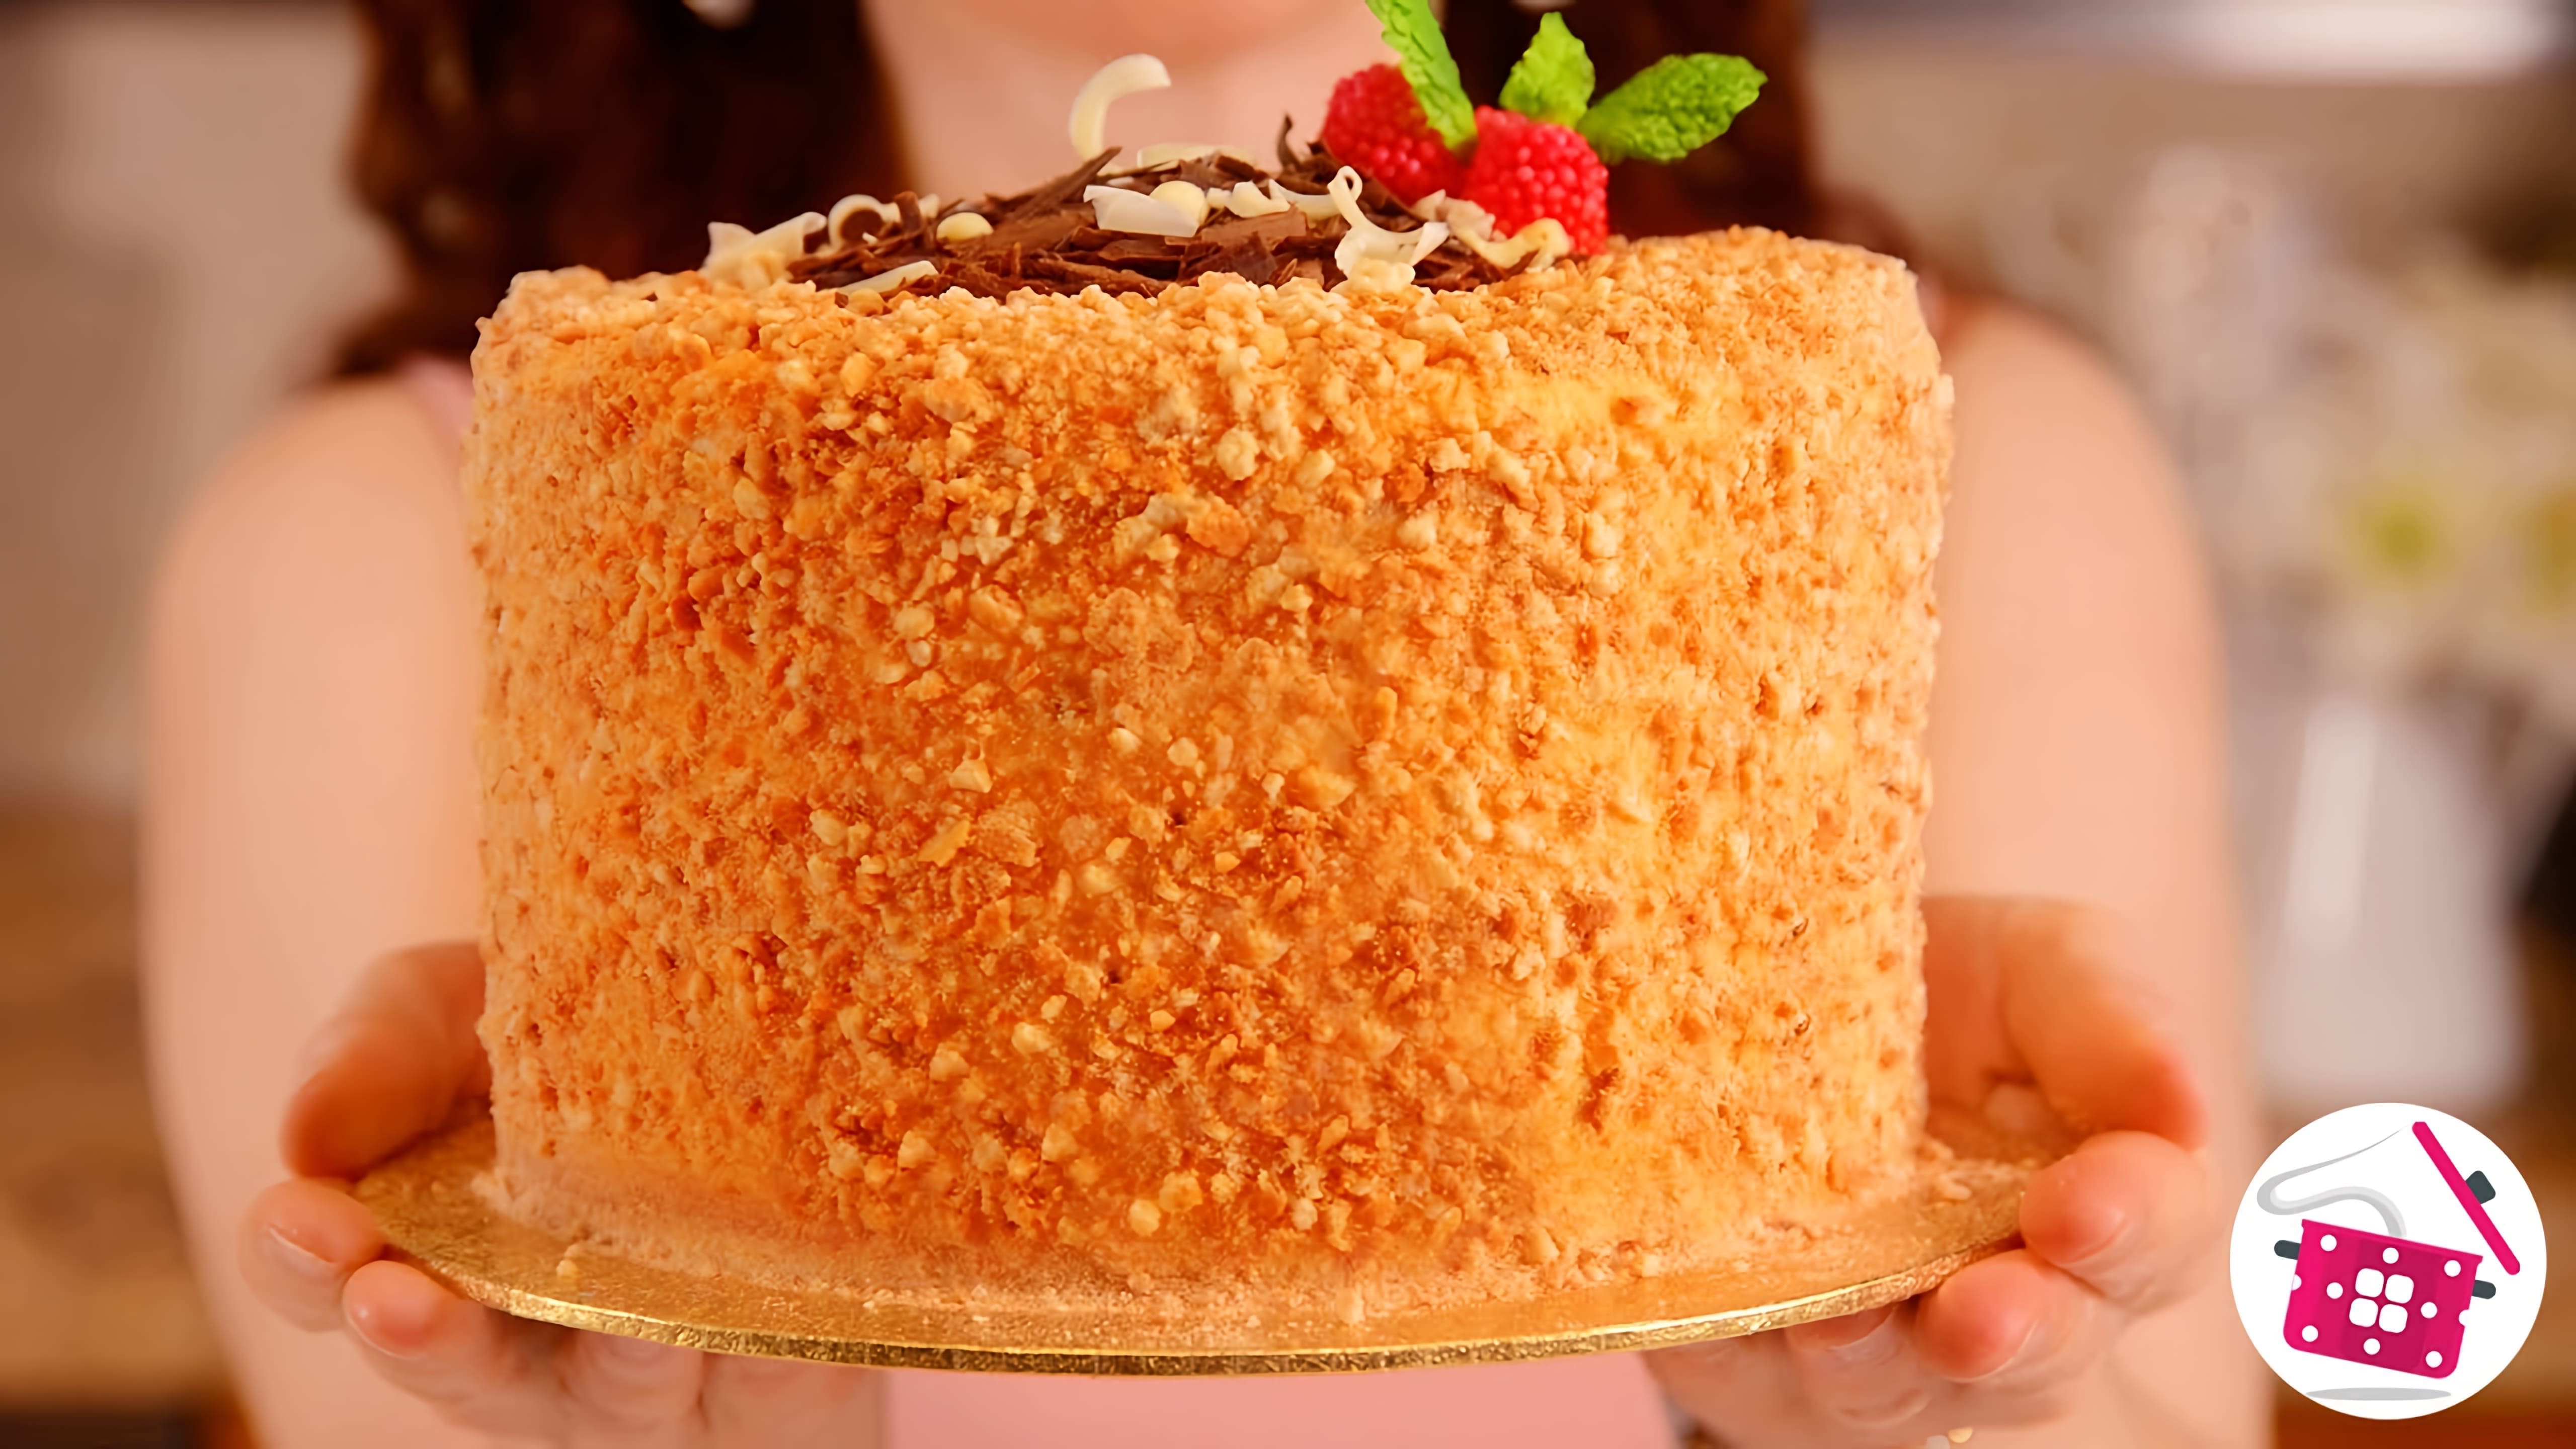 В этом видео представлен рецепт торта без выпечки, который готовится всего за 15 минут из трех ингредиентов: сметаны, сахара и муки